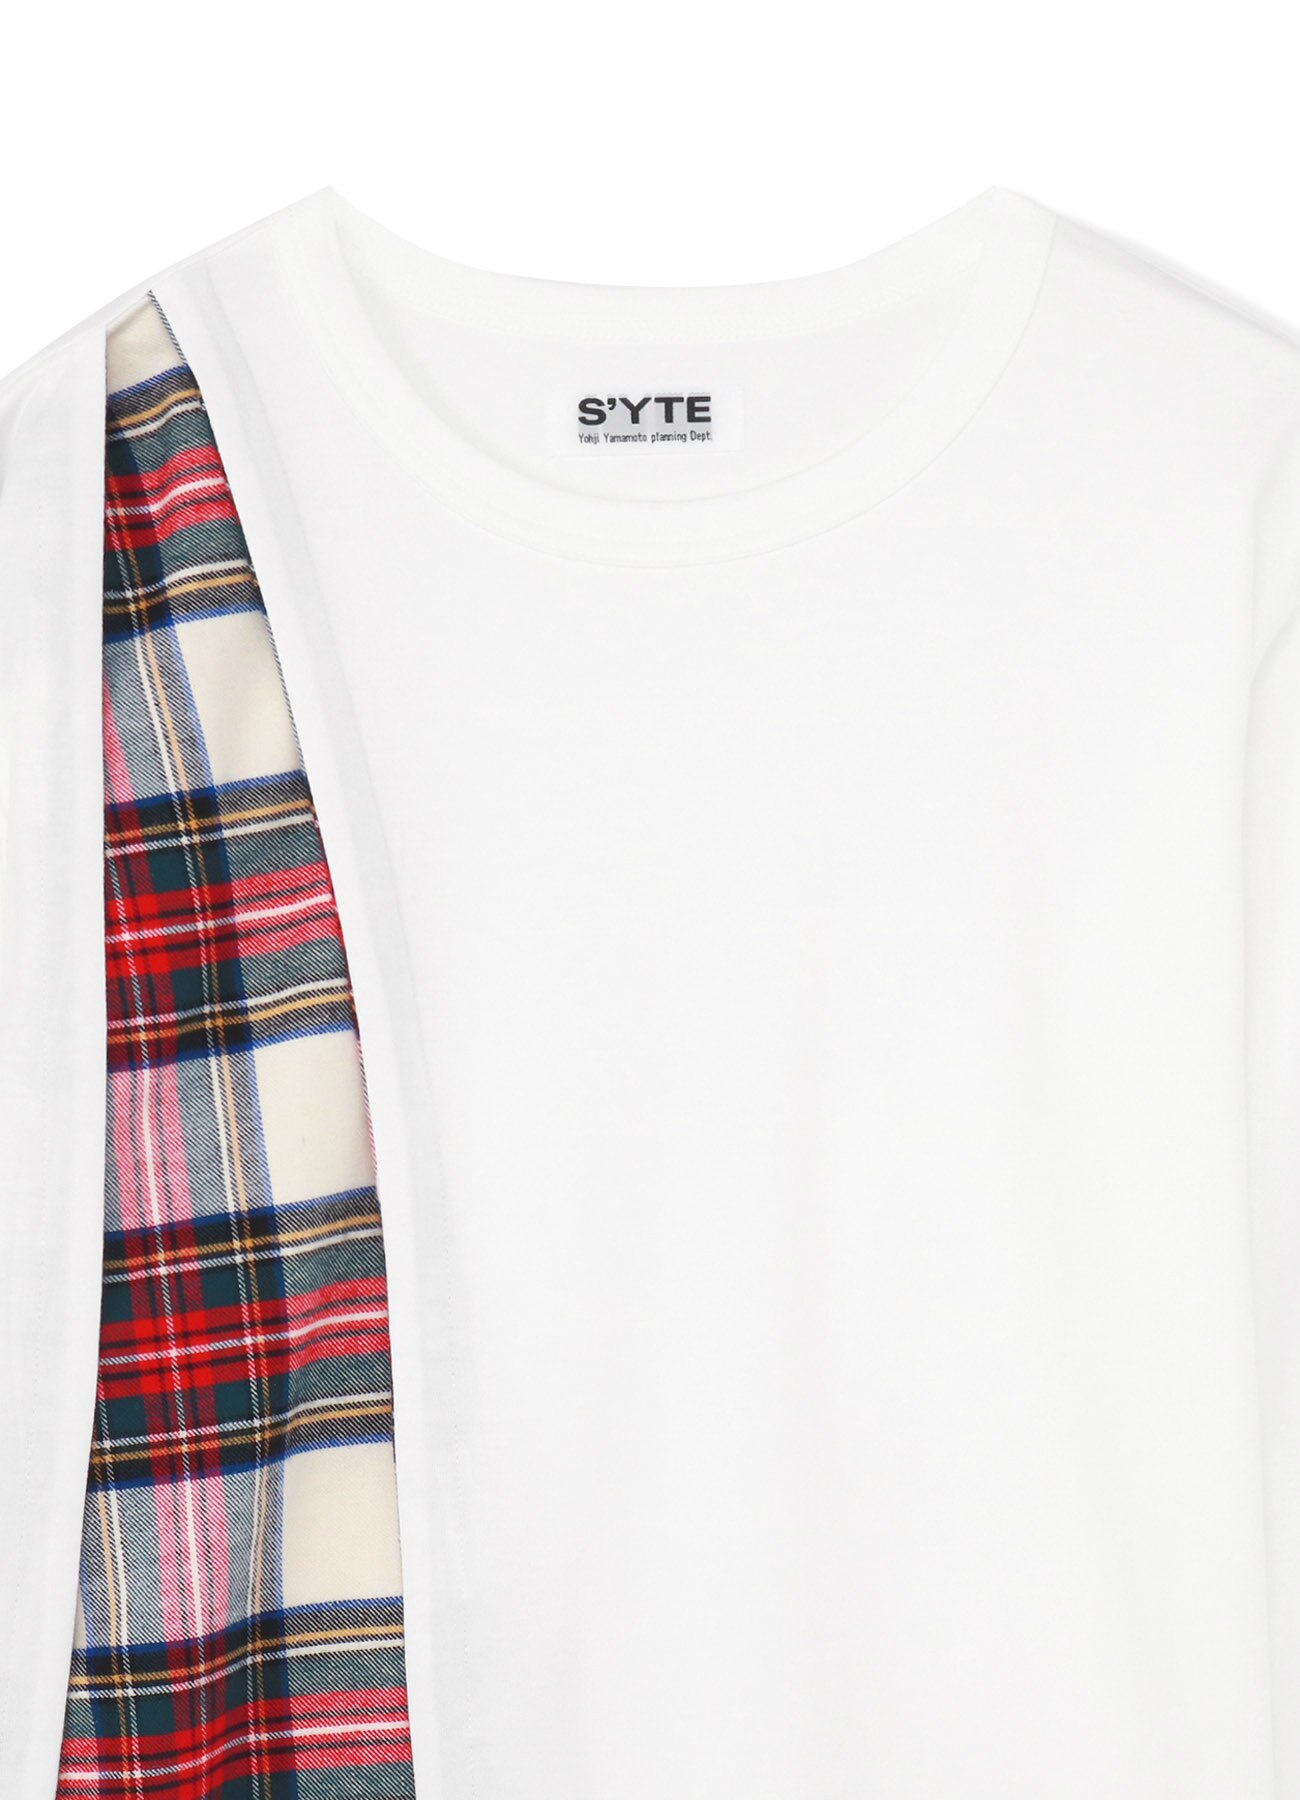 40/2 Cotton Jersey Tartan Check Layered Asymmetry Drape T-shirt